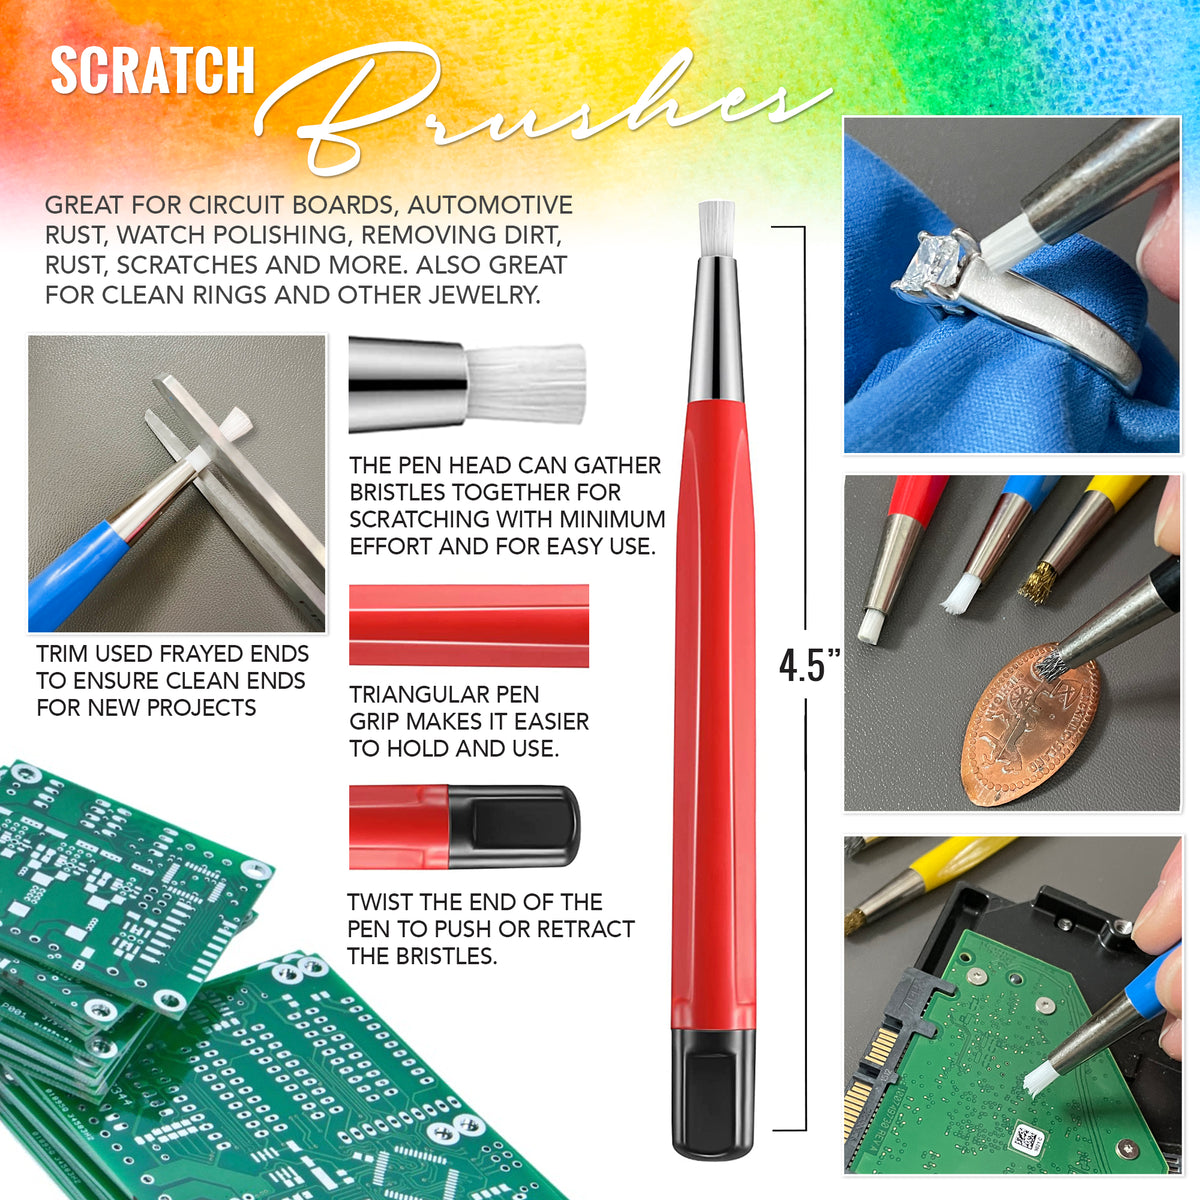 PIXISS Fiberglass Scratch Brush Refills - 24 Pack – Pixiss